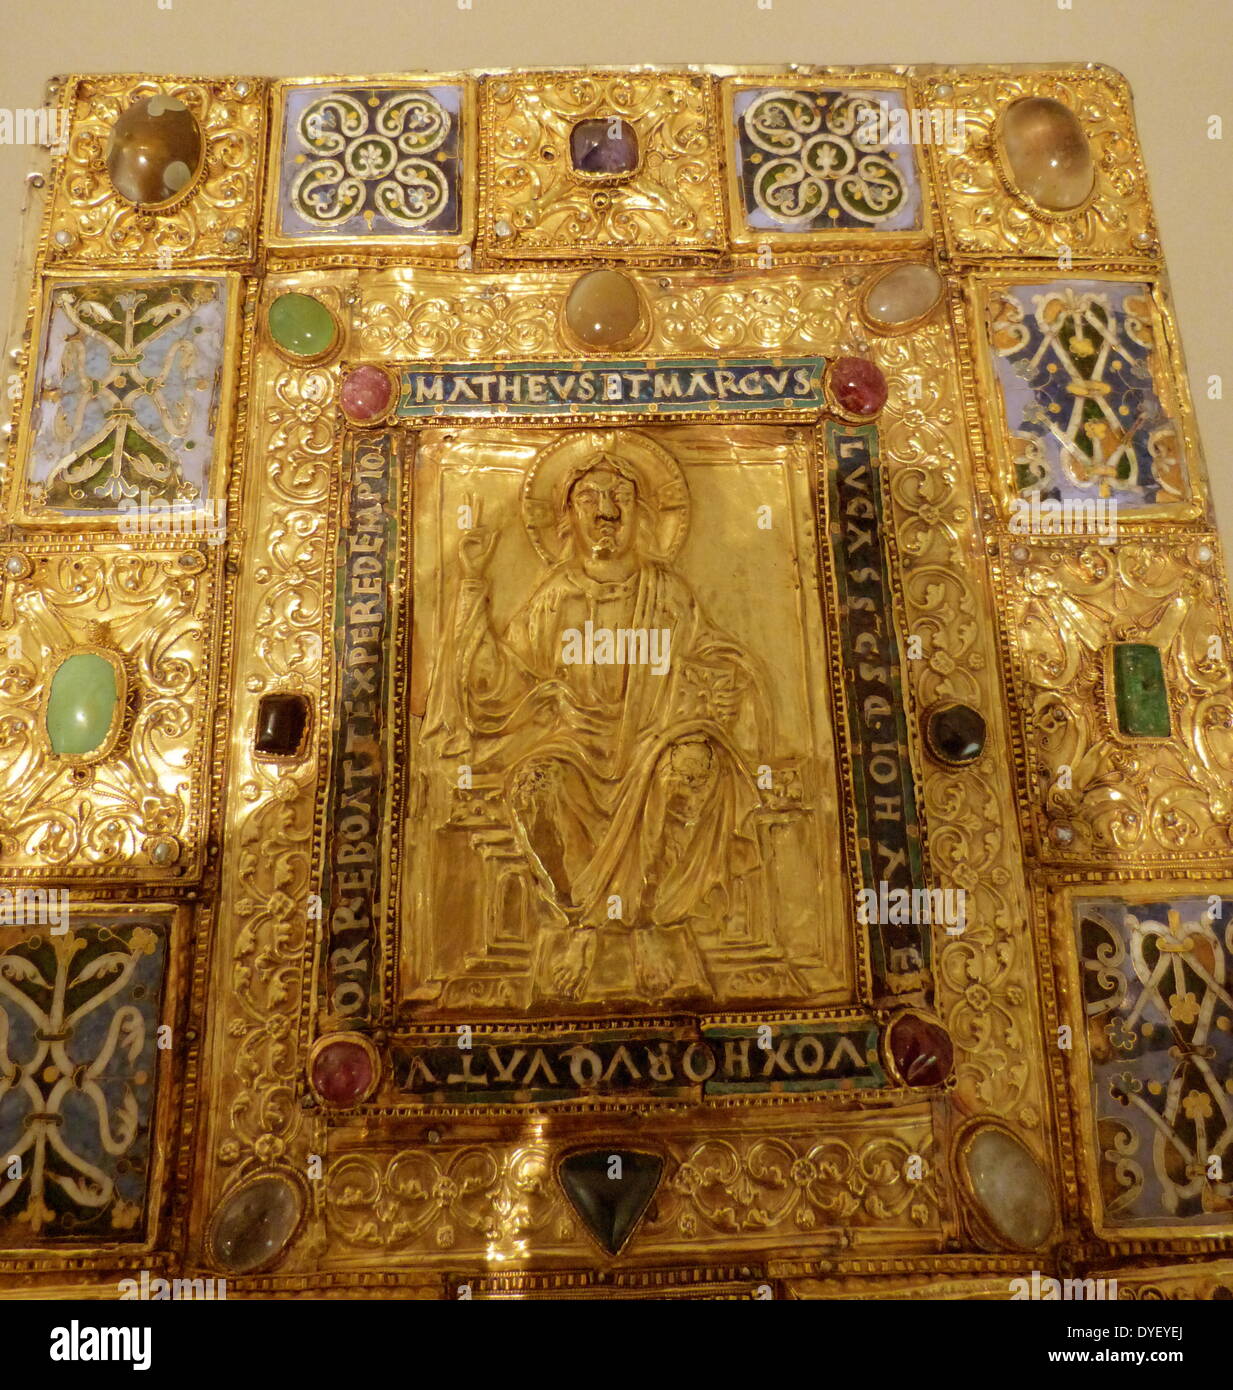 Bejeweled religiöse Tafel mit Relief Bild und lateinische Inschrift. Stockfoto